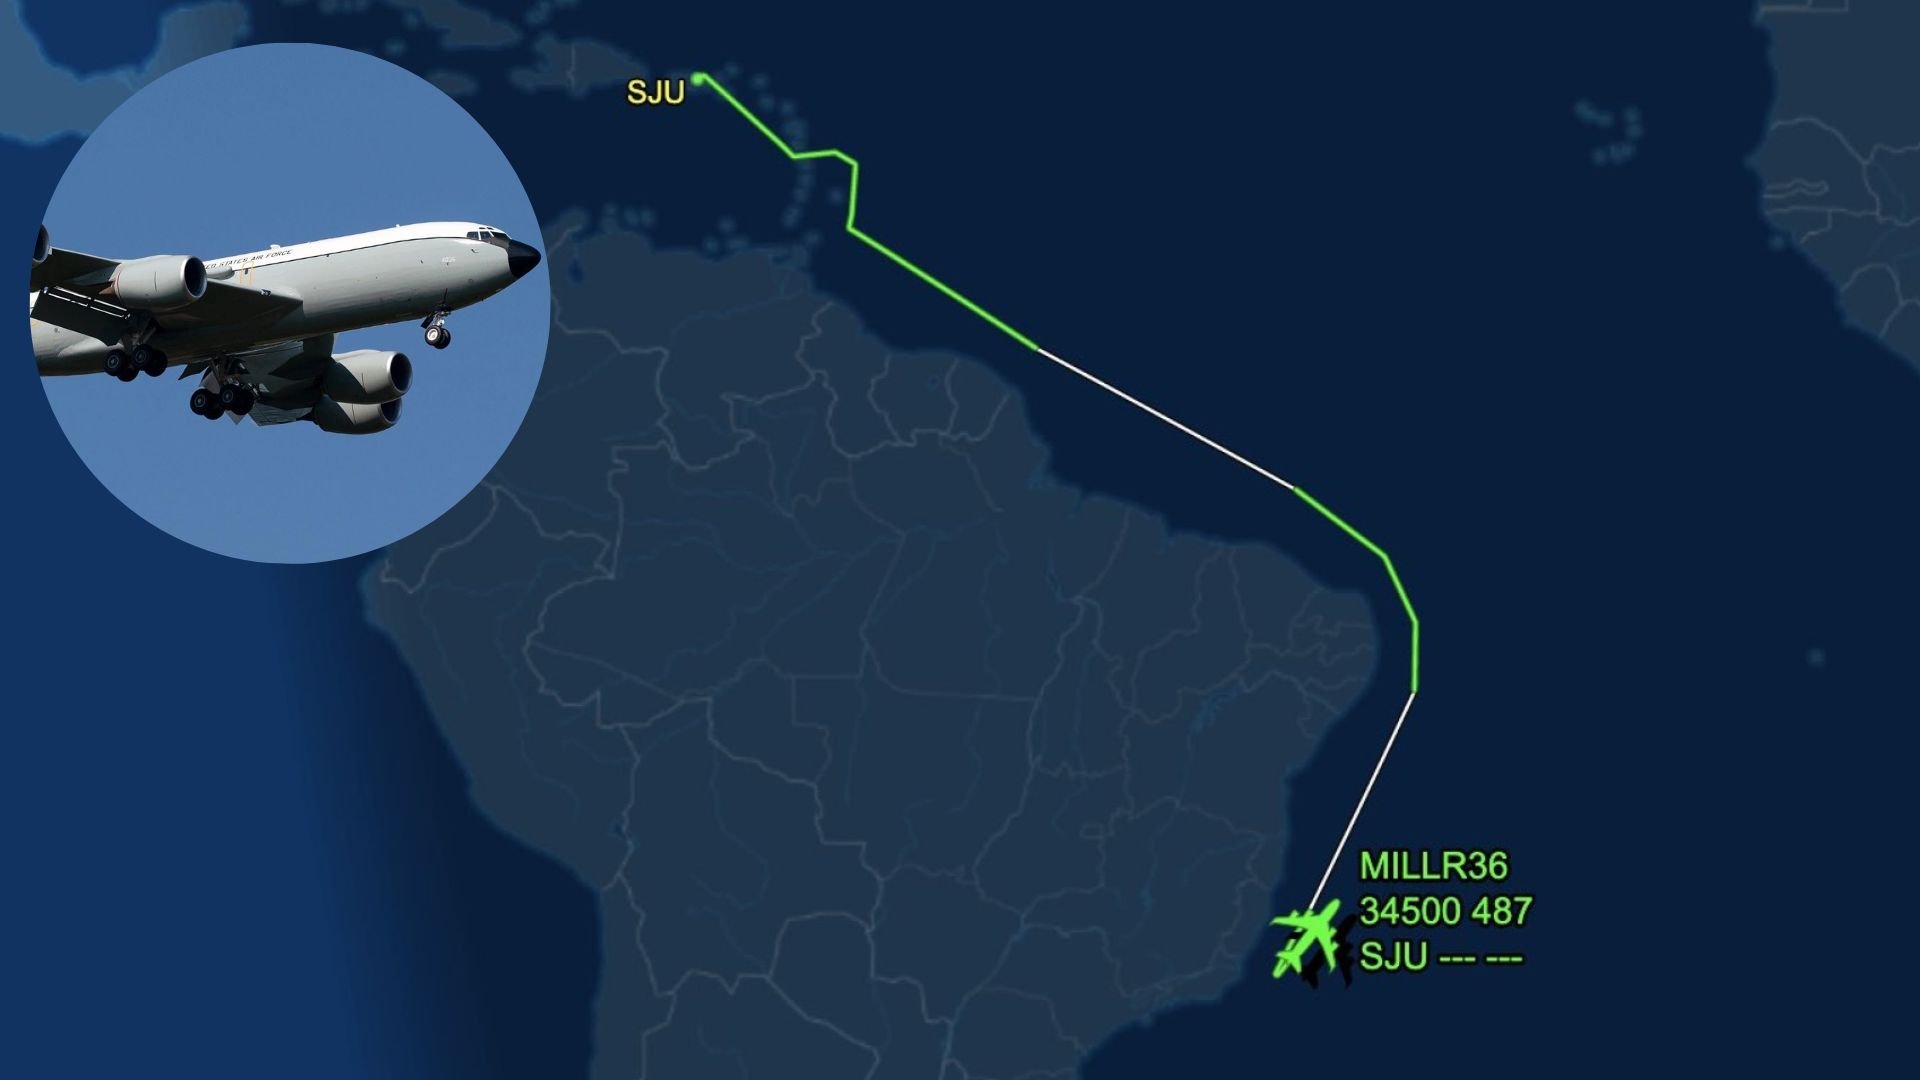 Jato da Força Aérea norte-americana voou por mais de 17h após sair do aeroporto de San Juan, em Porto Rico, e passar pelo Norte, Nordeste e Sudeste do Brasil